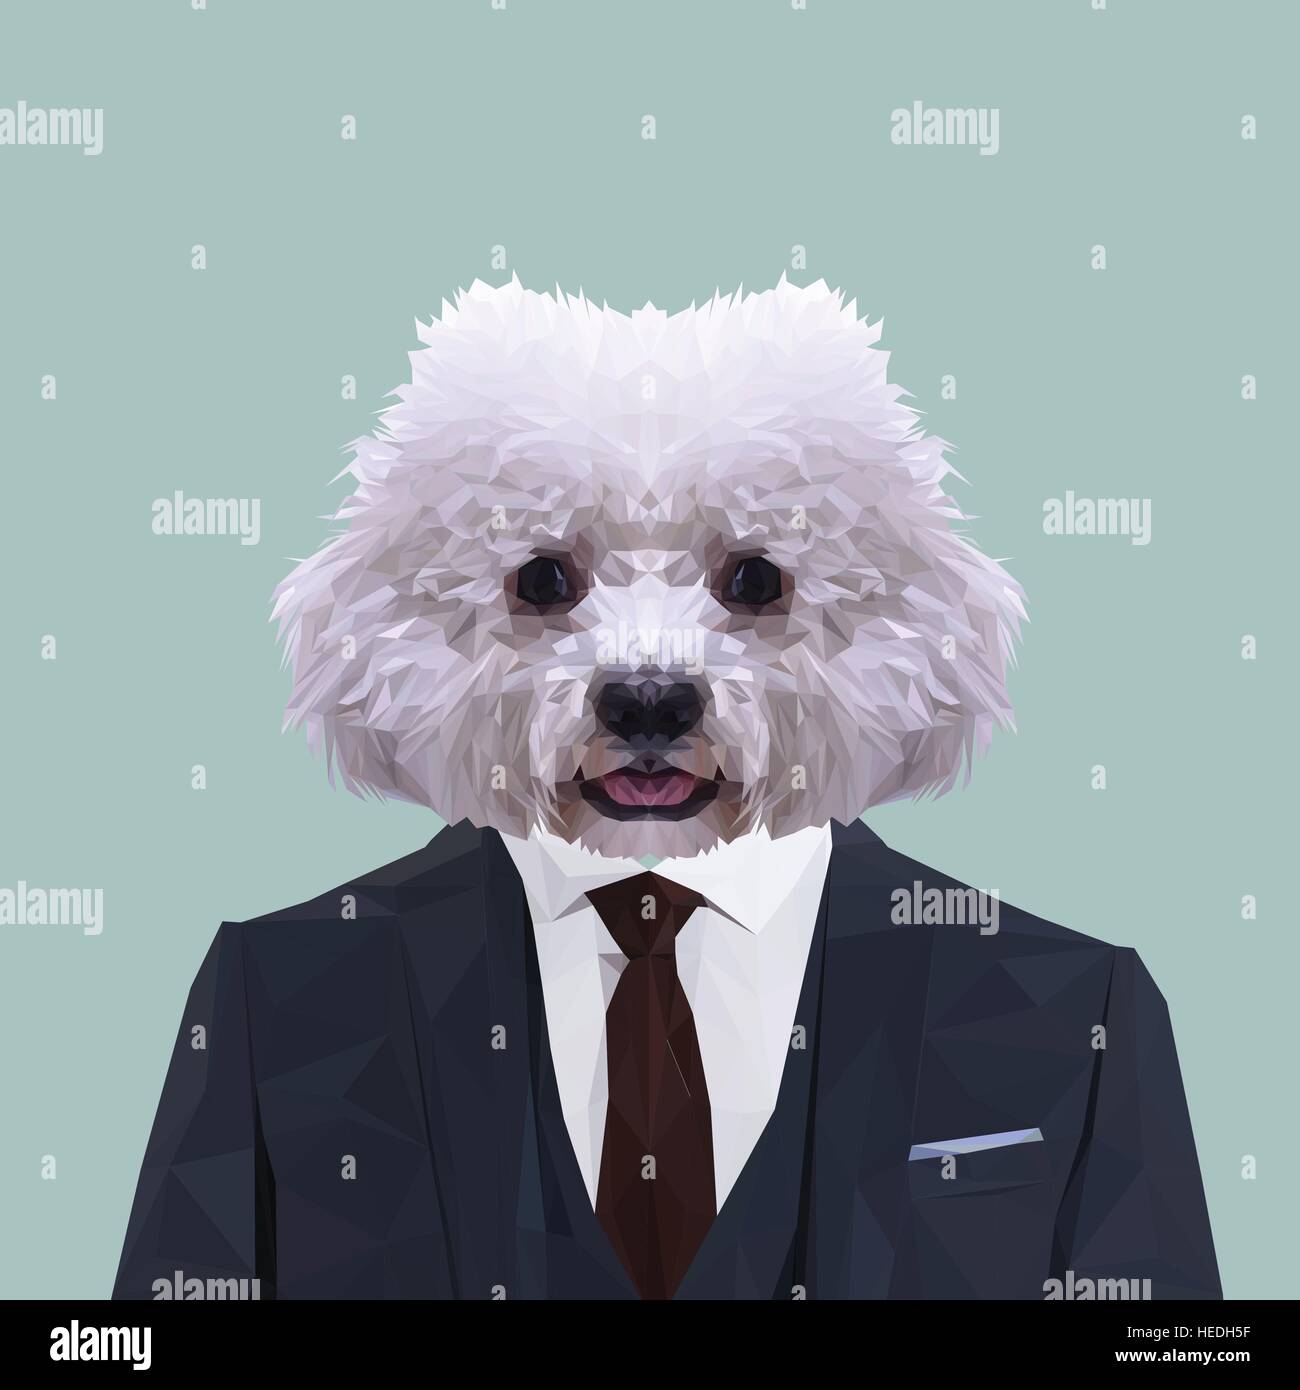 Bichon chien animal habillés en costume bleu marine avec cravate rouge. Homme d'affaires. Vector illustration. Illustration de Vecteur